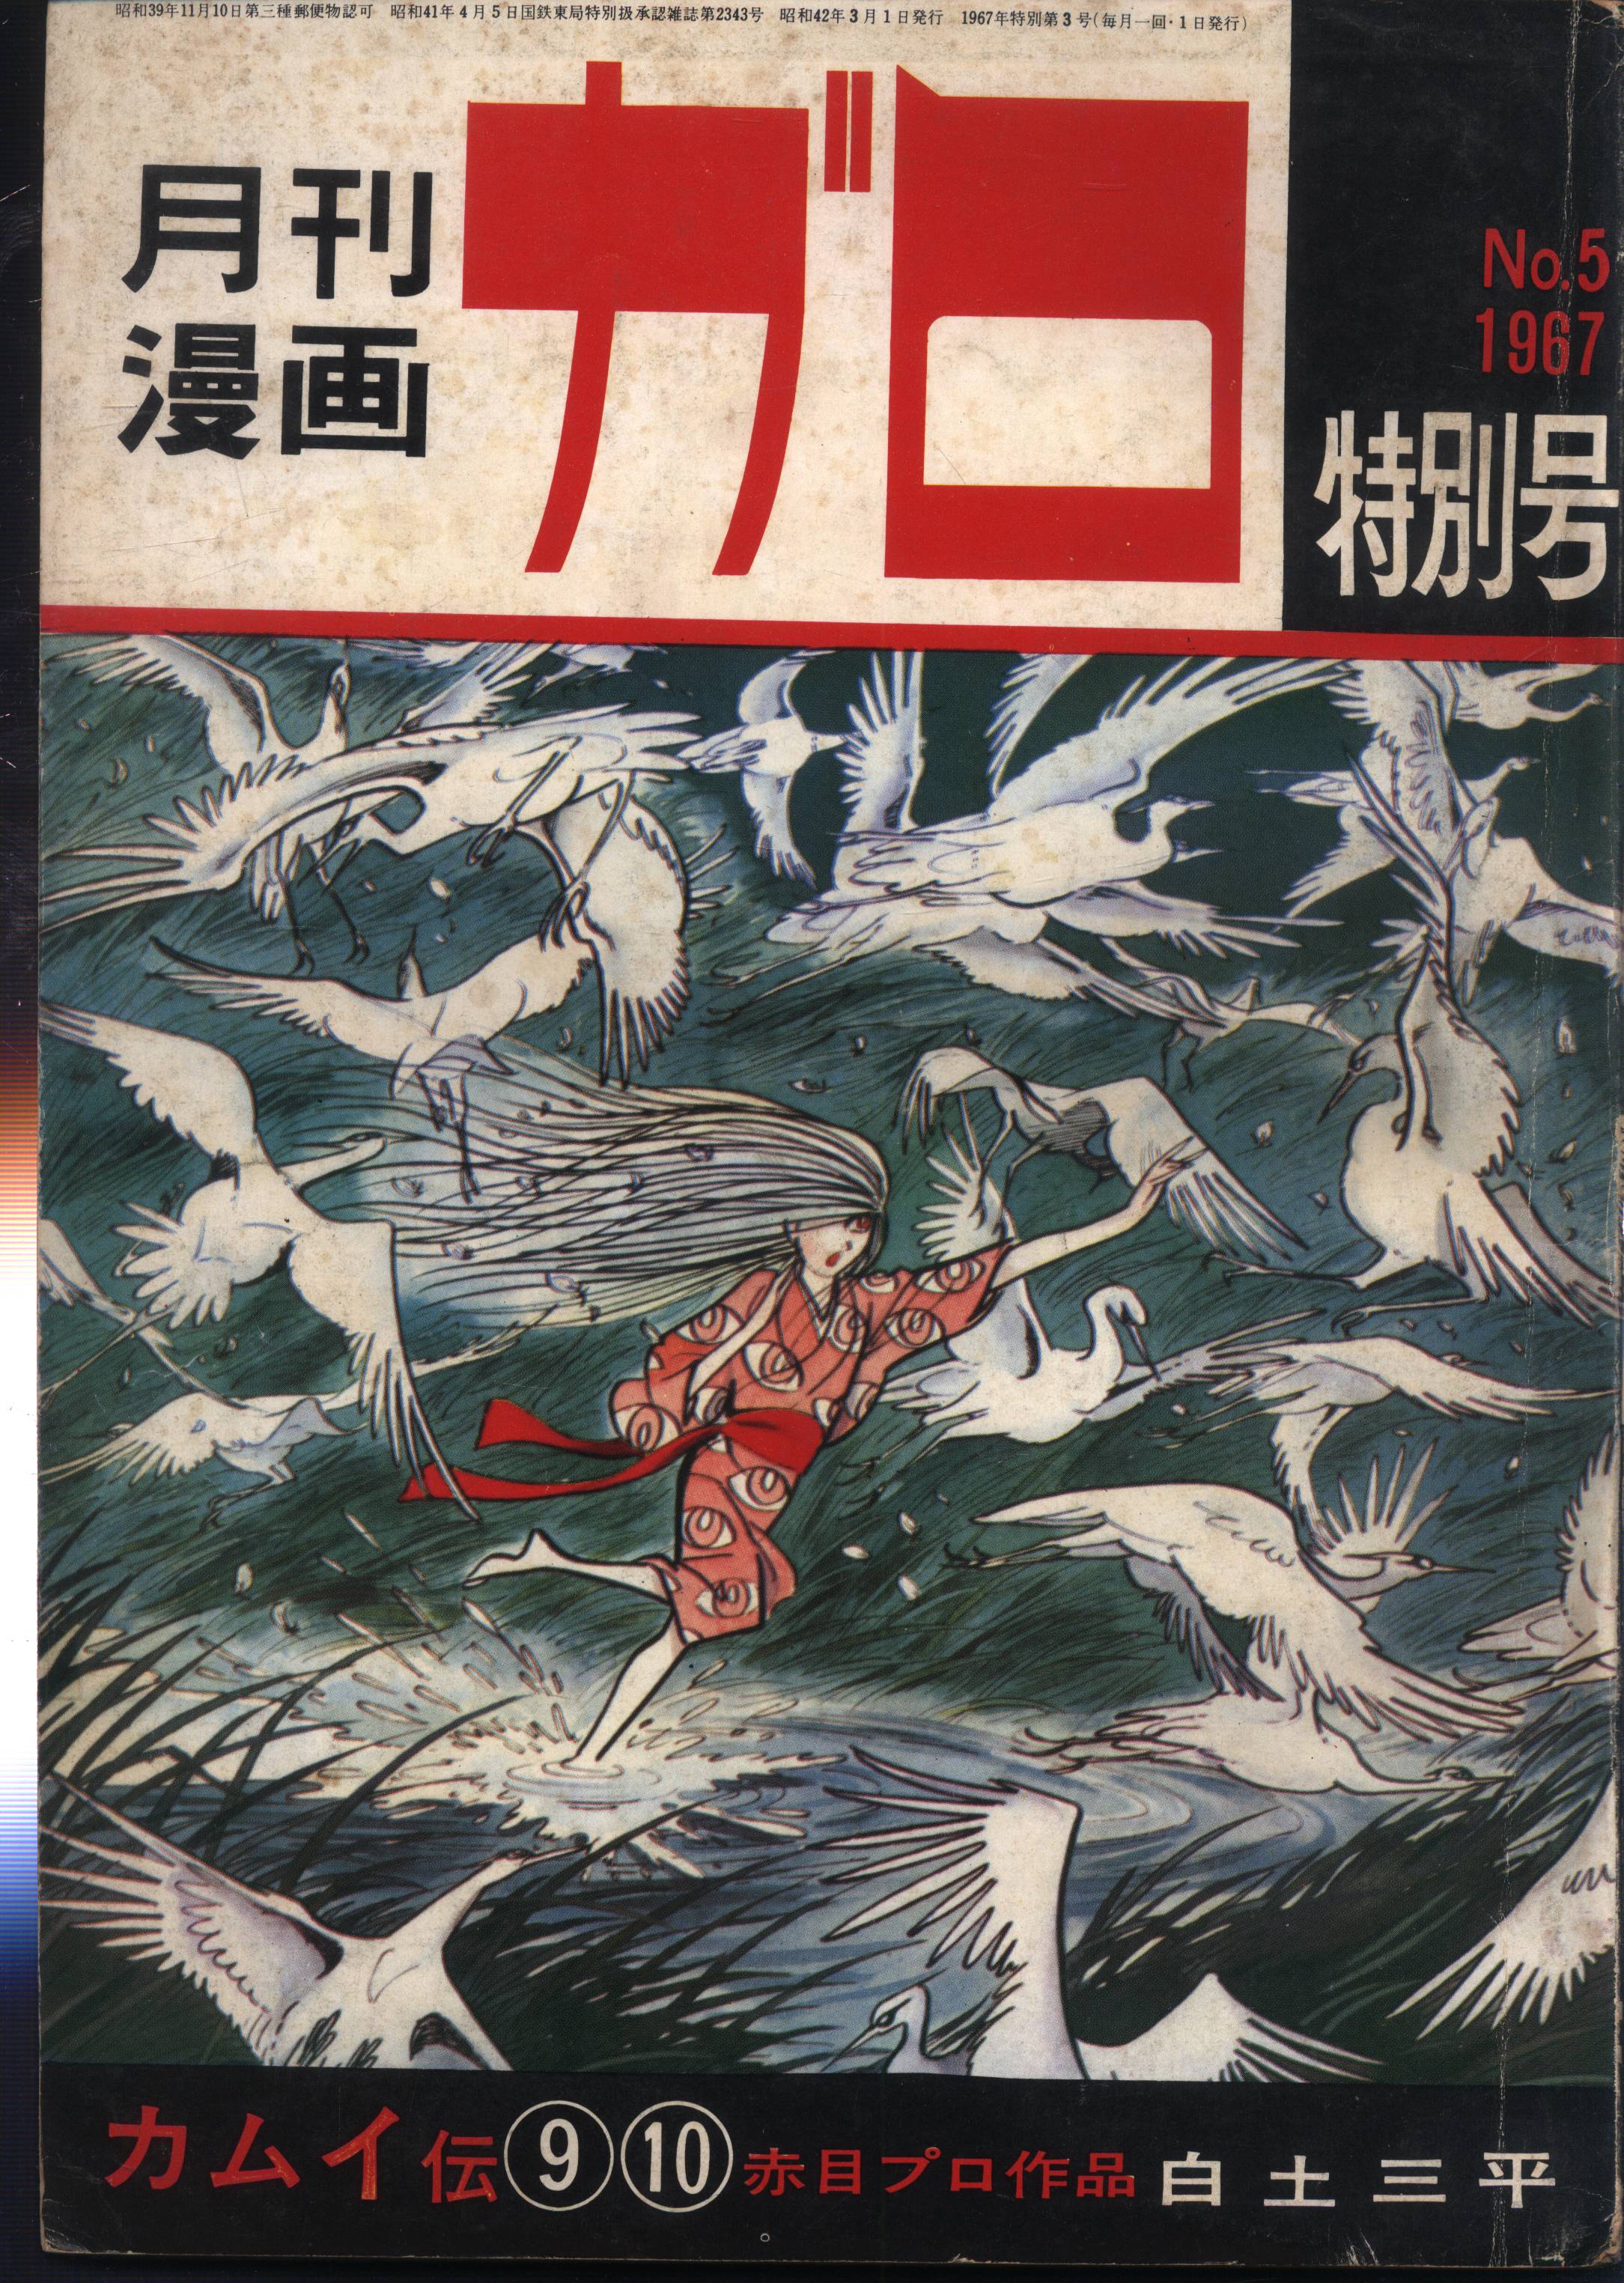 青林堂 1967年(昭和42年)の漫画雑誌 月刊漫画ガロ特別号1967年03月号